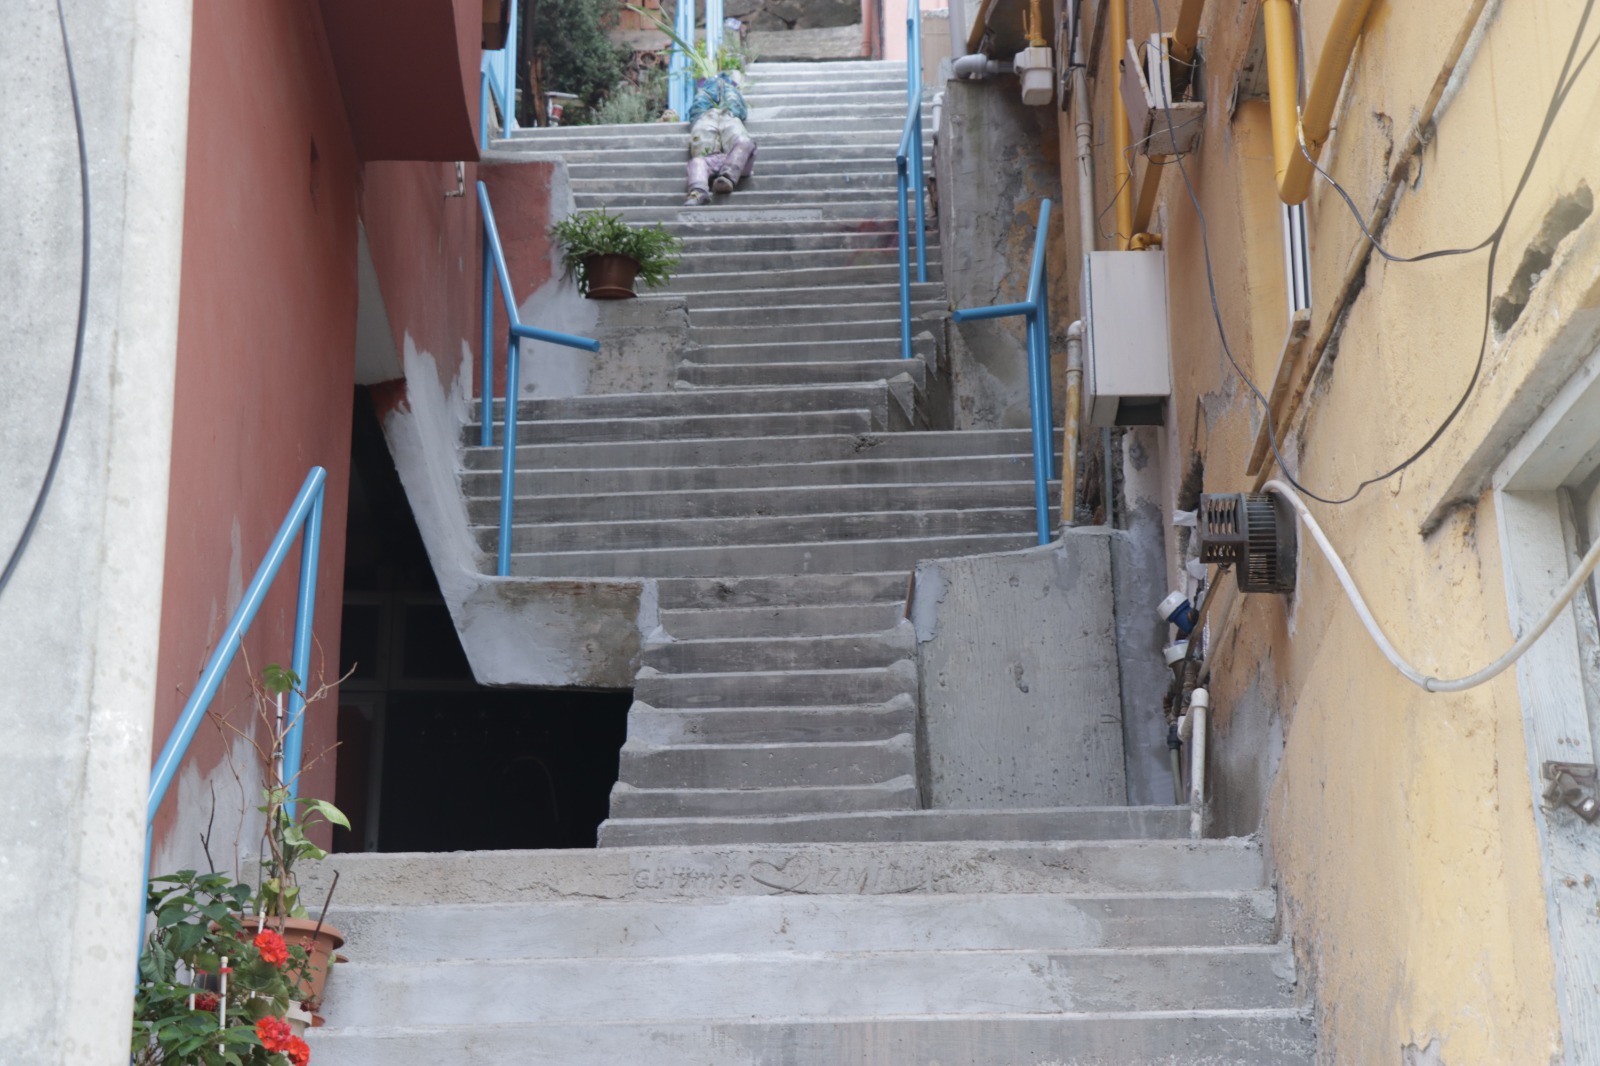 İzmit Belediyesi Yenidoğan’daki merdivenleri yeniledi